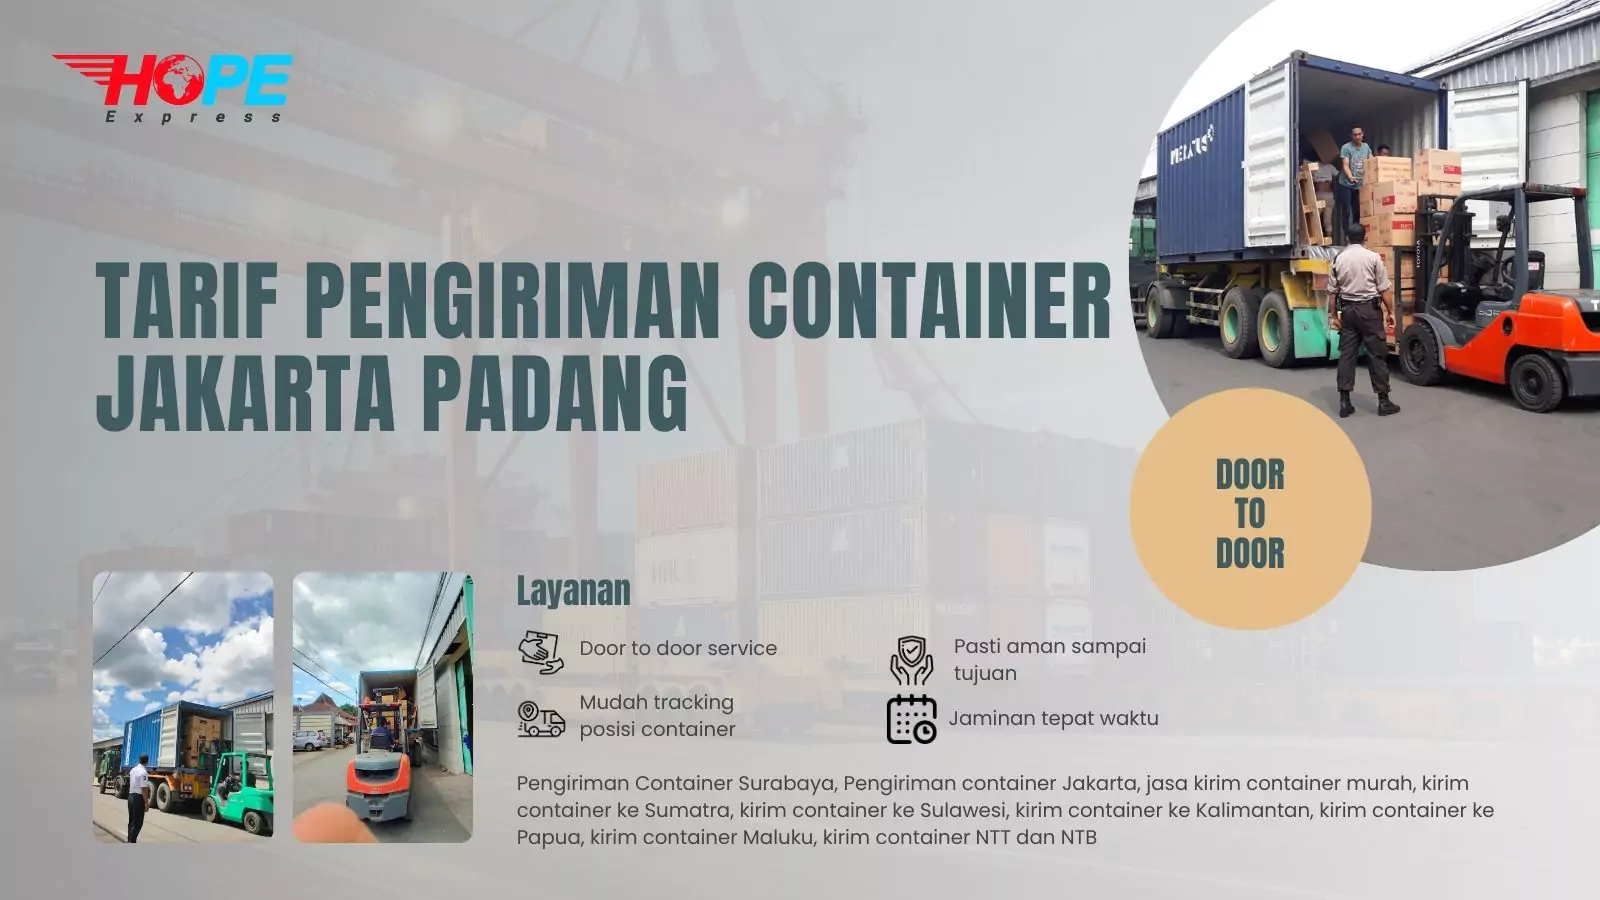 Tarif Pengiriman Container Jakarta Padang